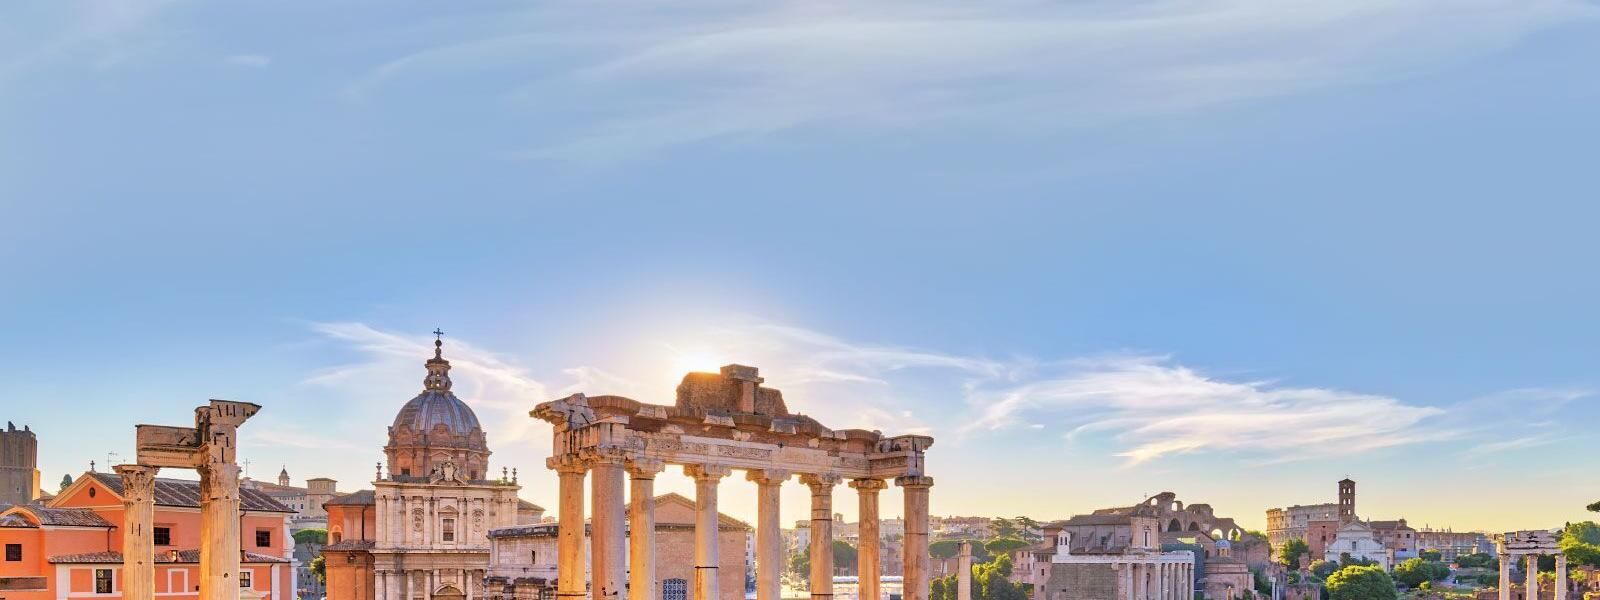 Luxus Ferienhäuser und Ferienwohnungen in Rom - BELLEVUE Ferienhaus